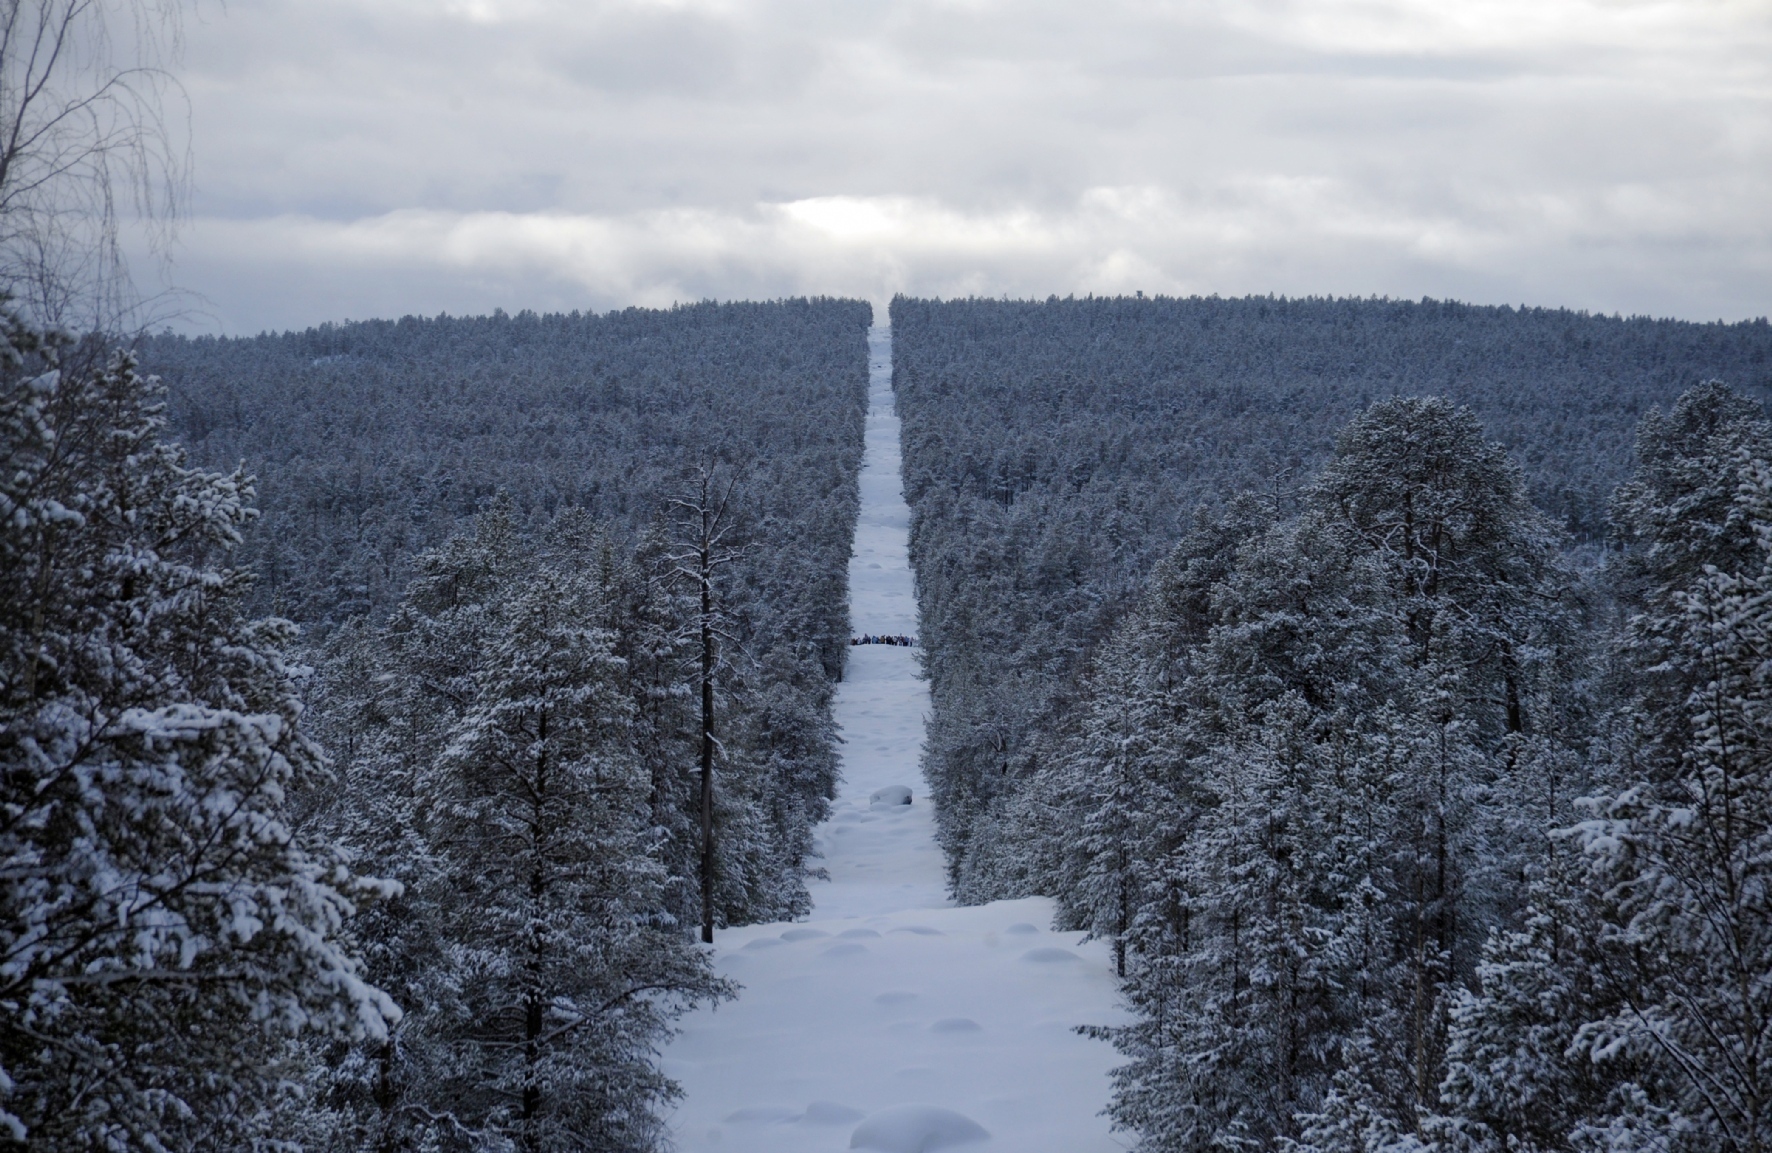 Российско-финская граница